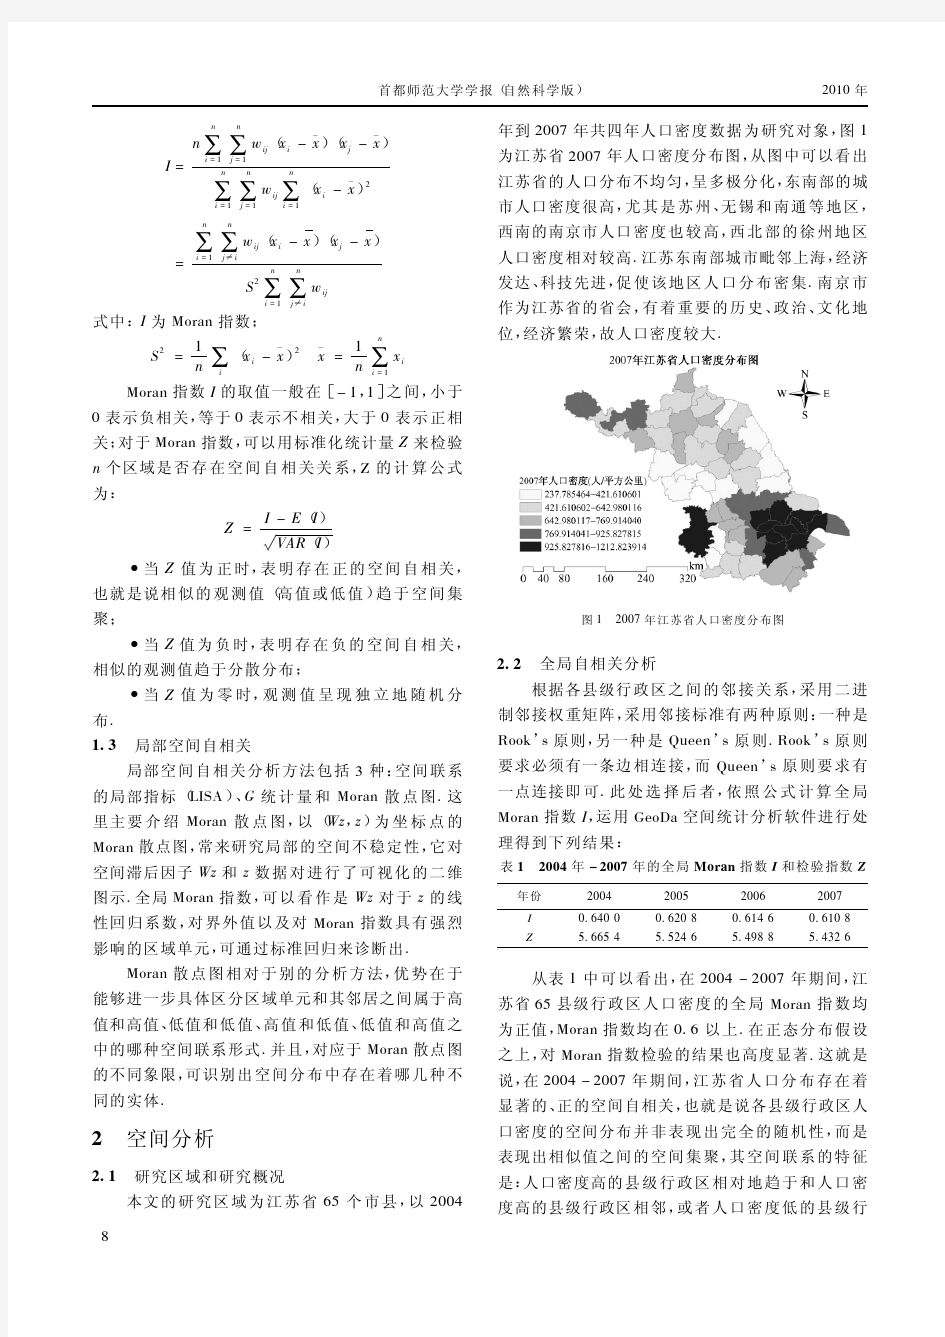 江苏省人口分布的空间自相关分析